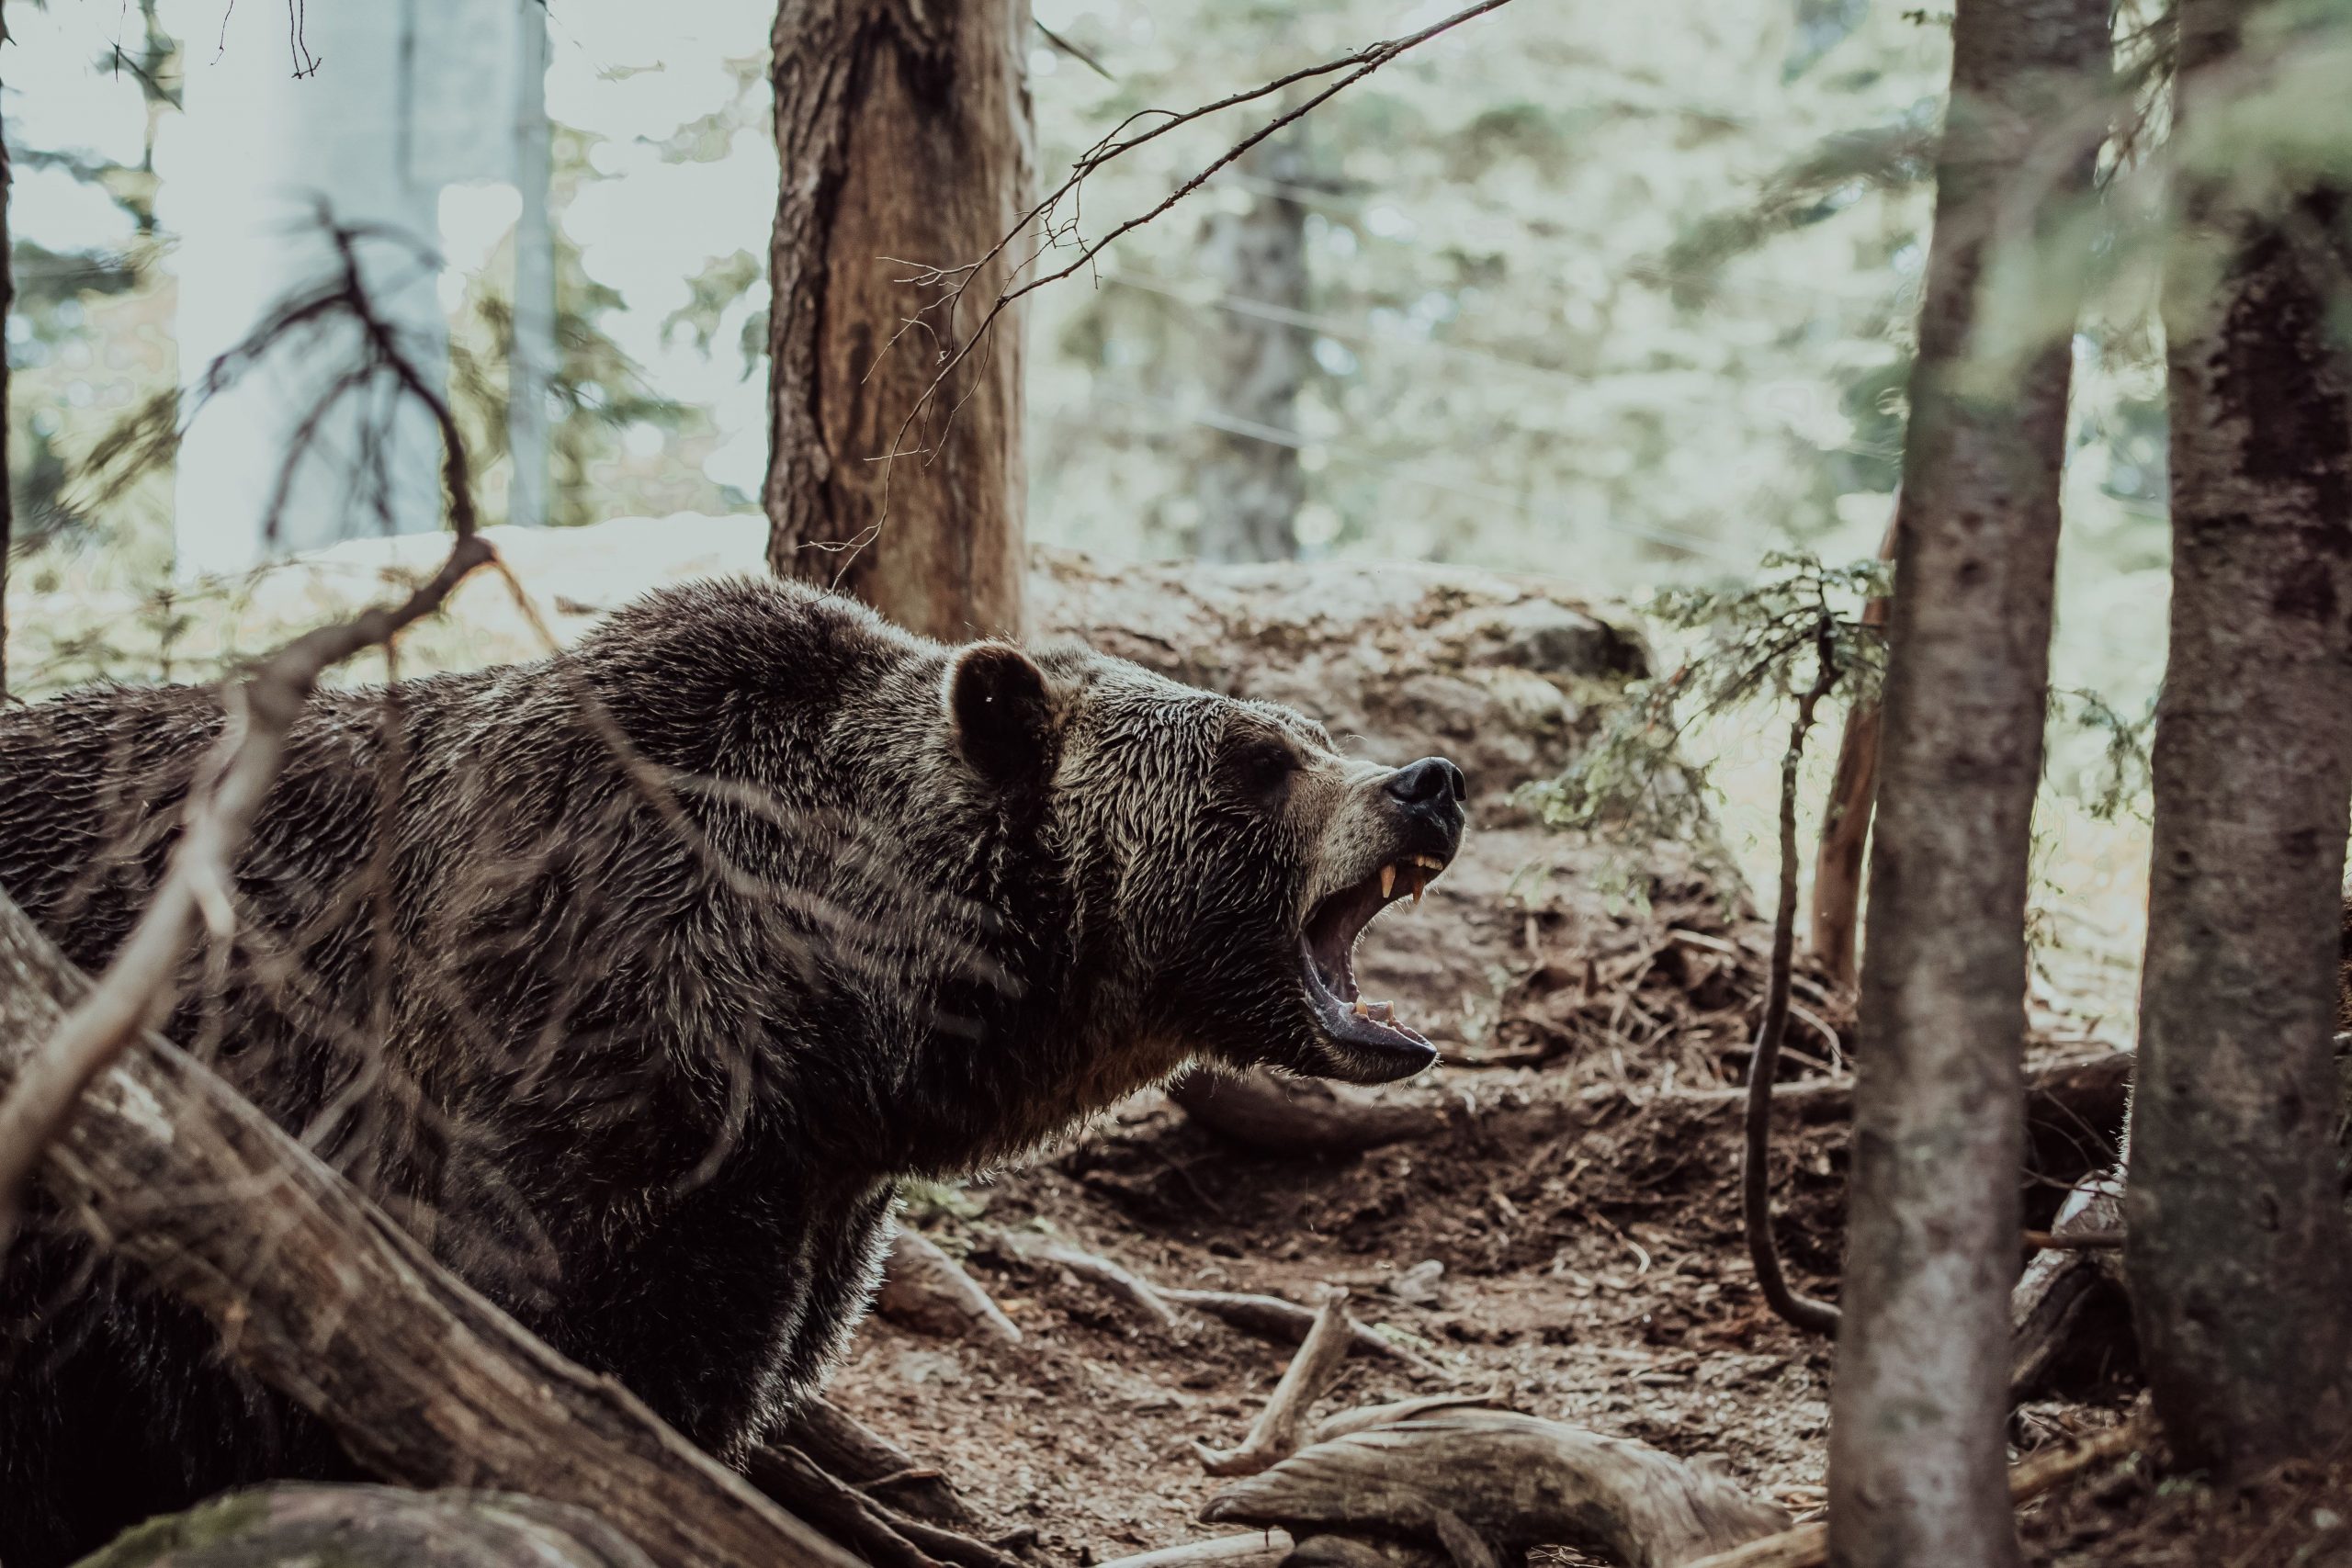 गए थे जंगल हनीमून मनाने, मिल गया भालू, बिना खाए-पिए 10 दिन पेड़ पर लटका रहा कपल